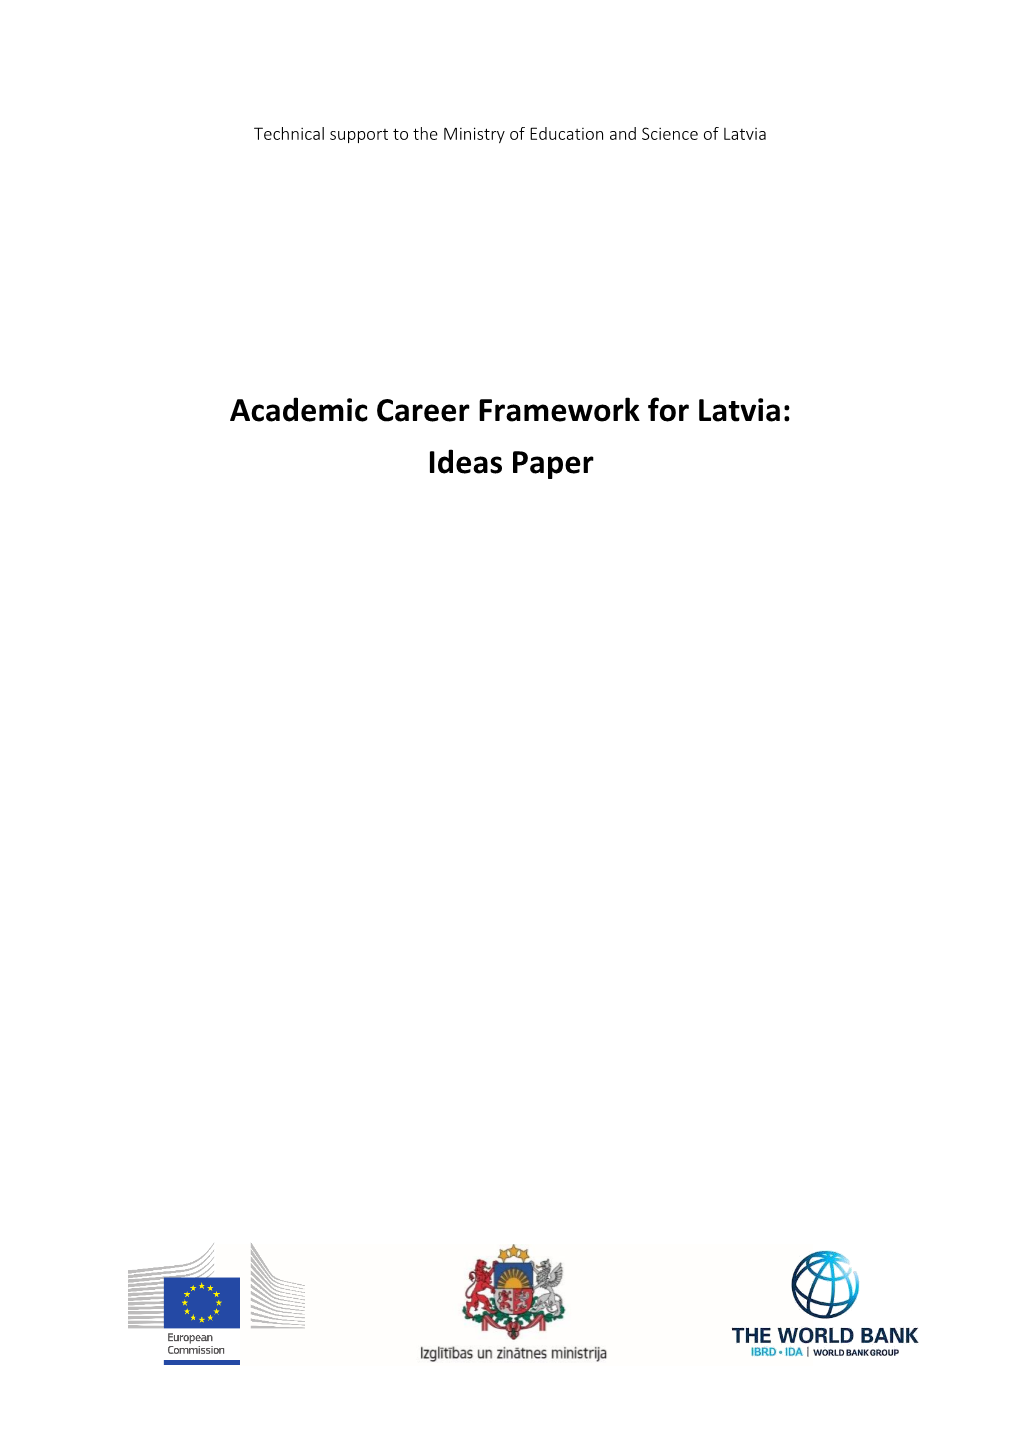 Academic Career Framework for Latvia: Ideas Paper